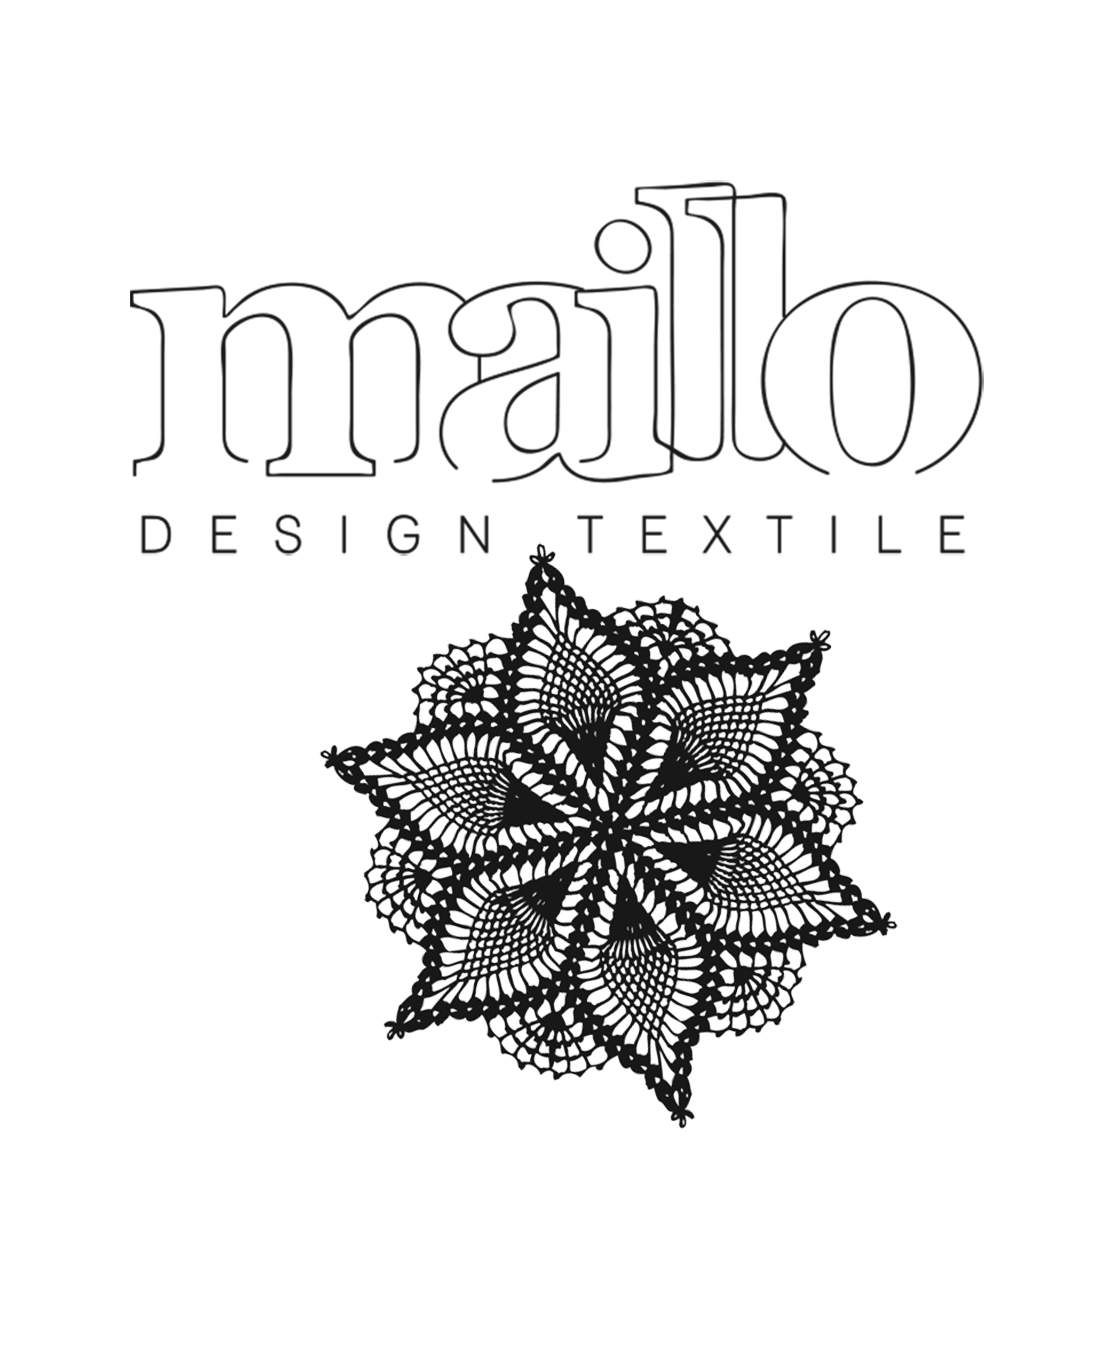 MaillO design